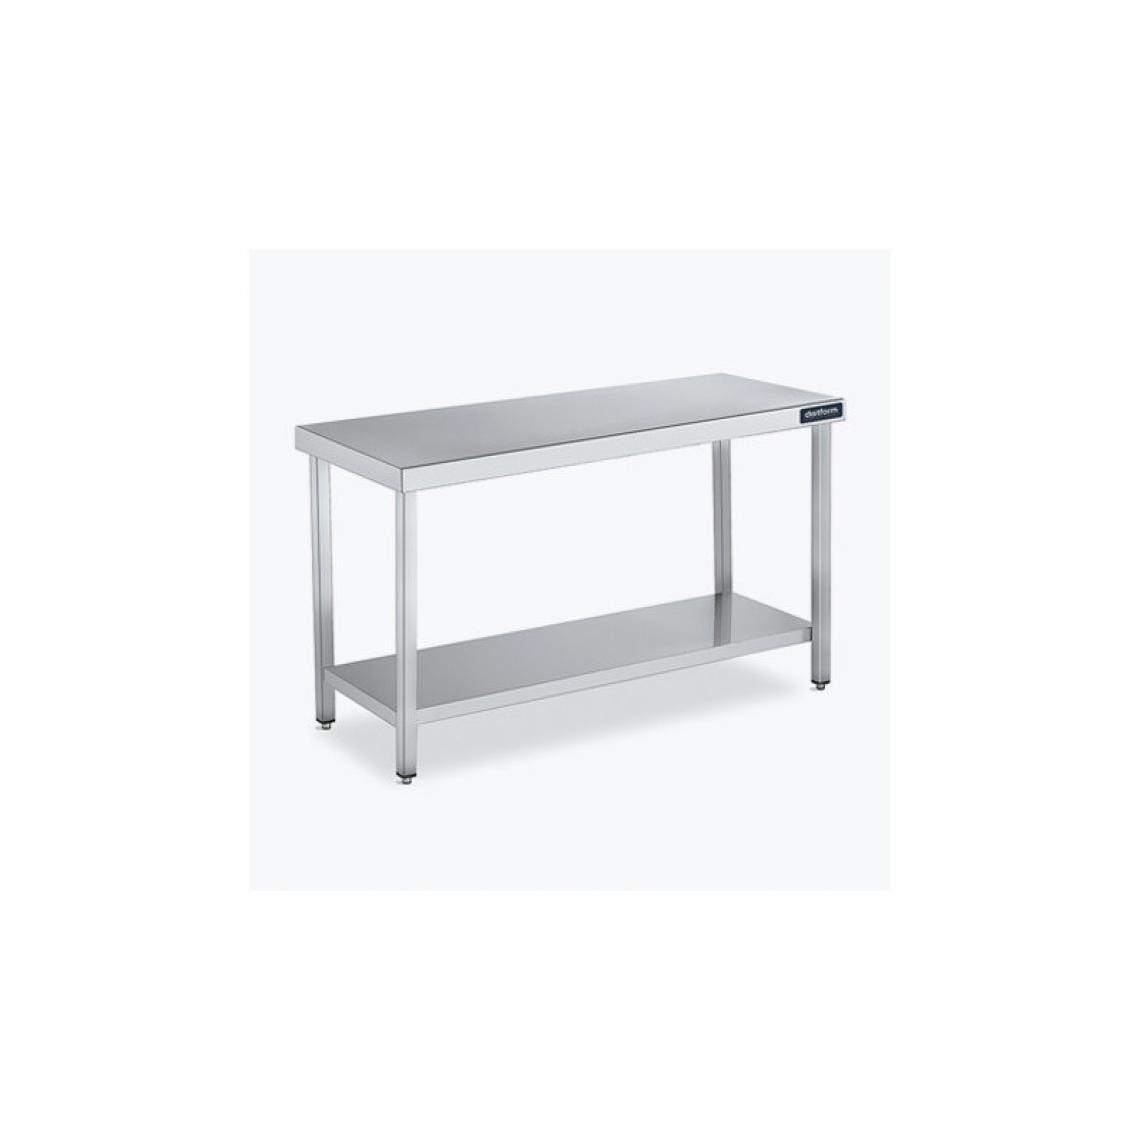 DISTFORM - Table Centrale 600x600 avec Étagère - Distform - Inox 18/101900x600x850mm - Tables à manger